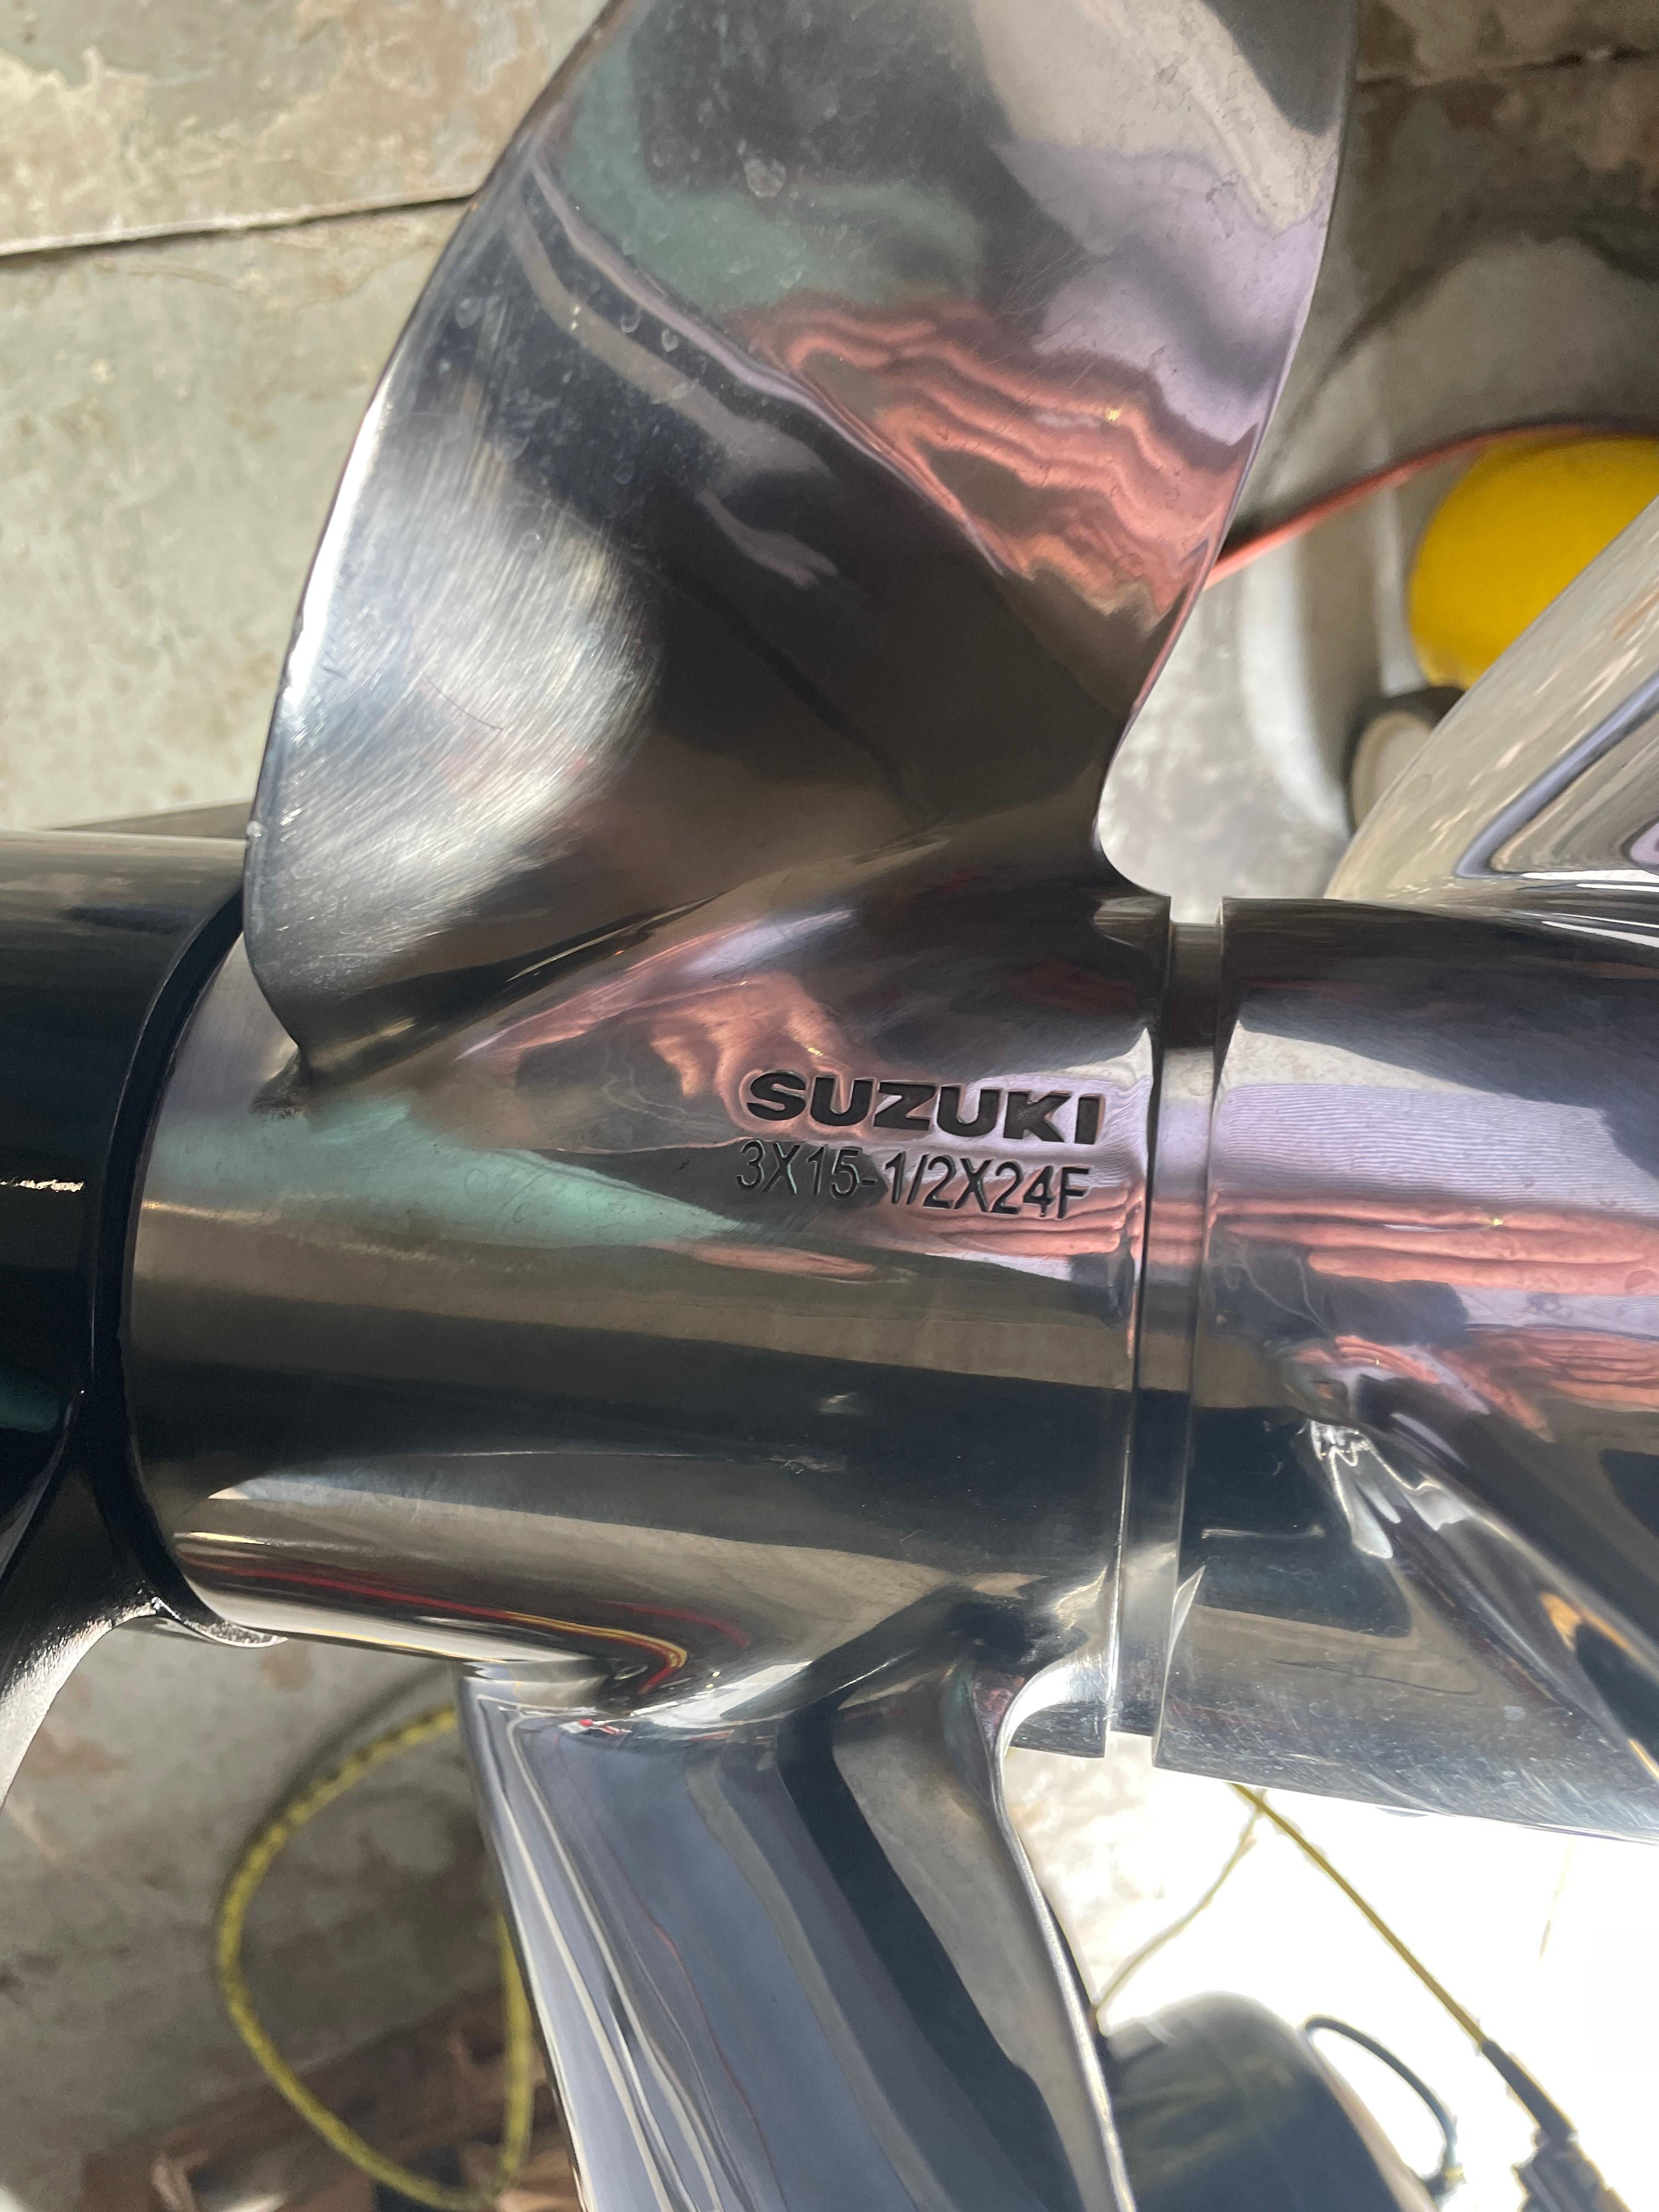 Suzuki Prop